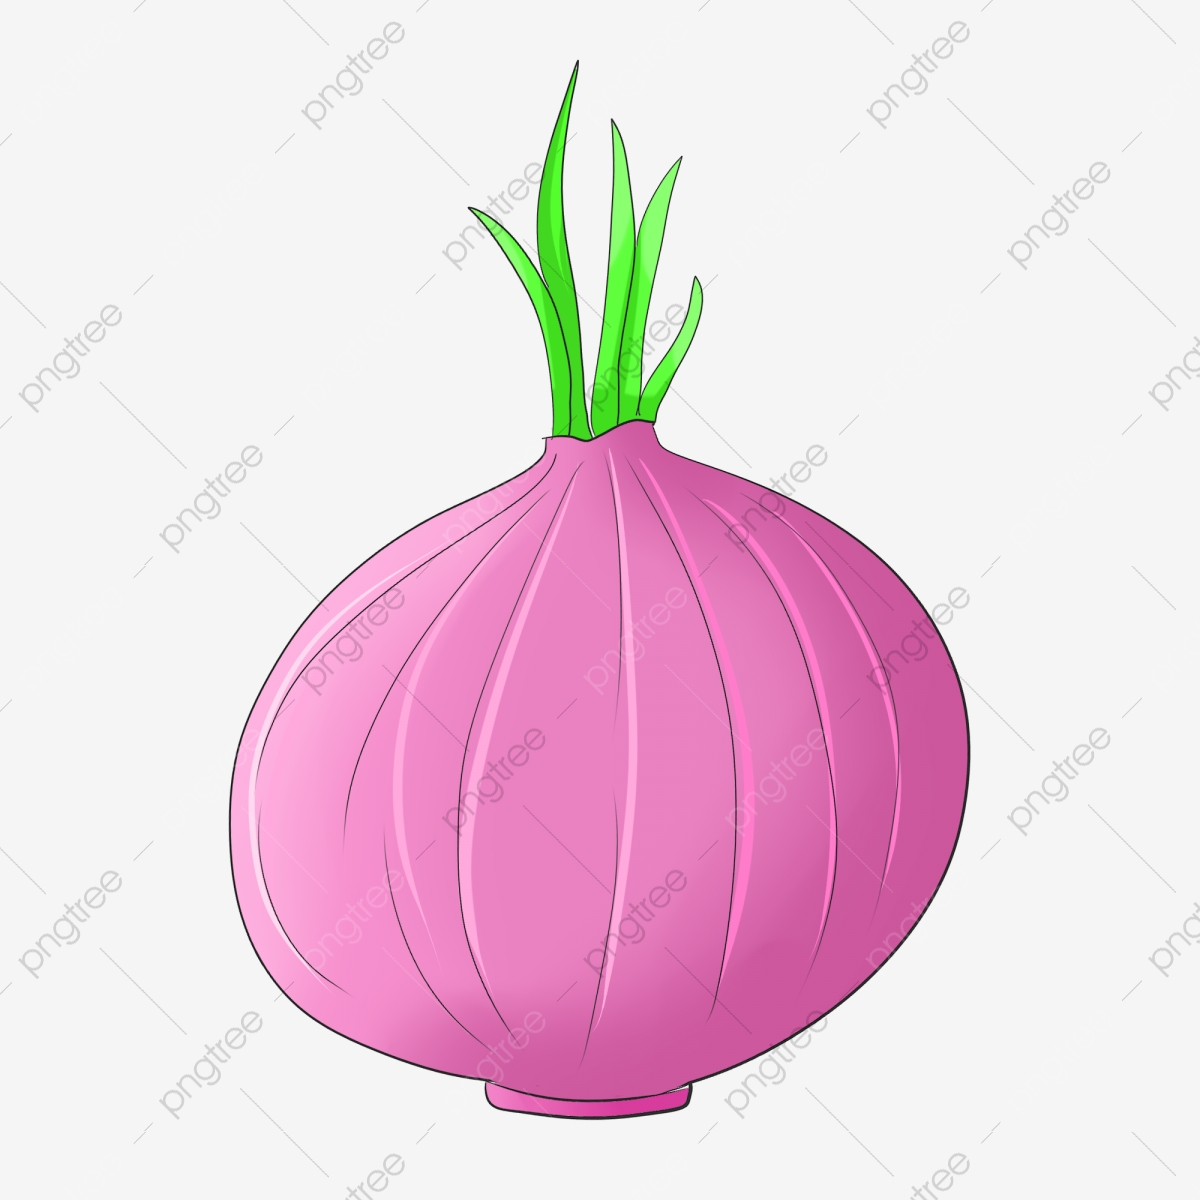 Onion clipart cartoon purple. Vegetable illustration 